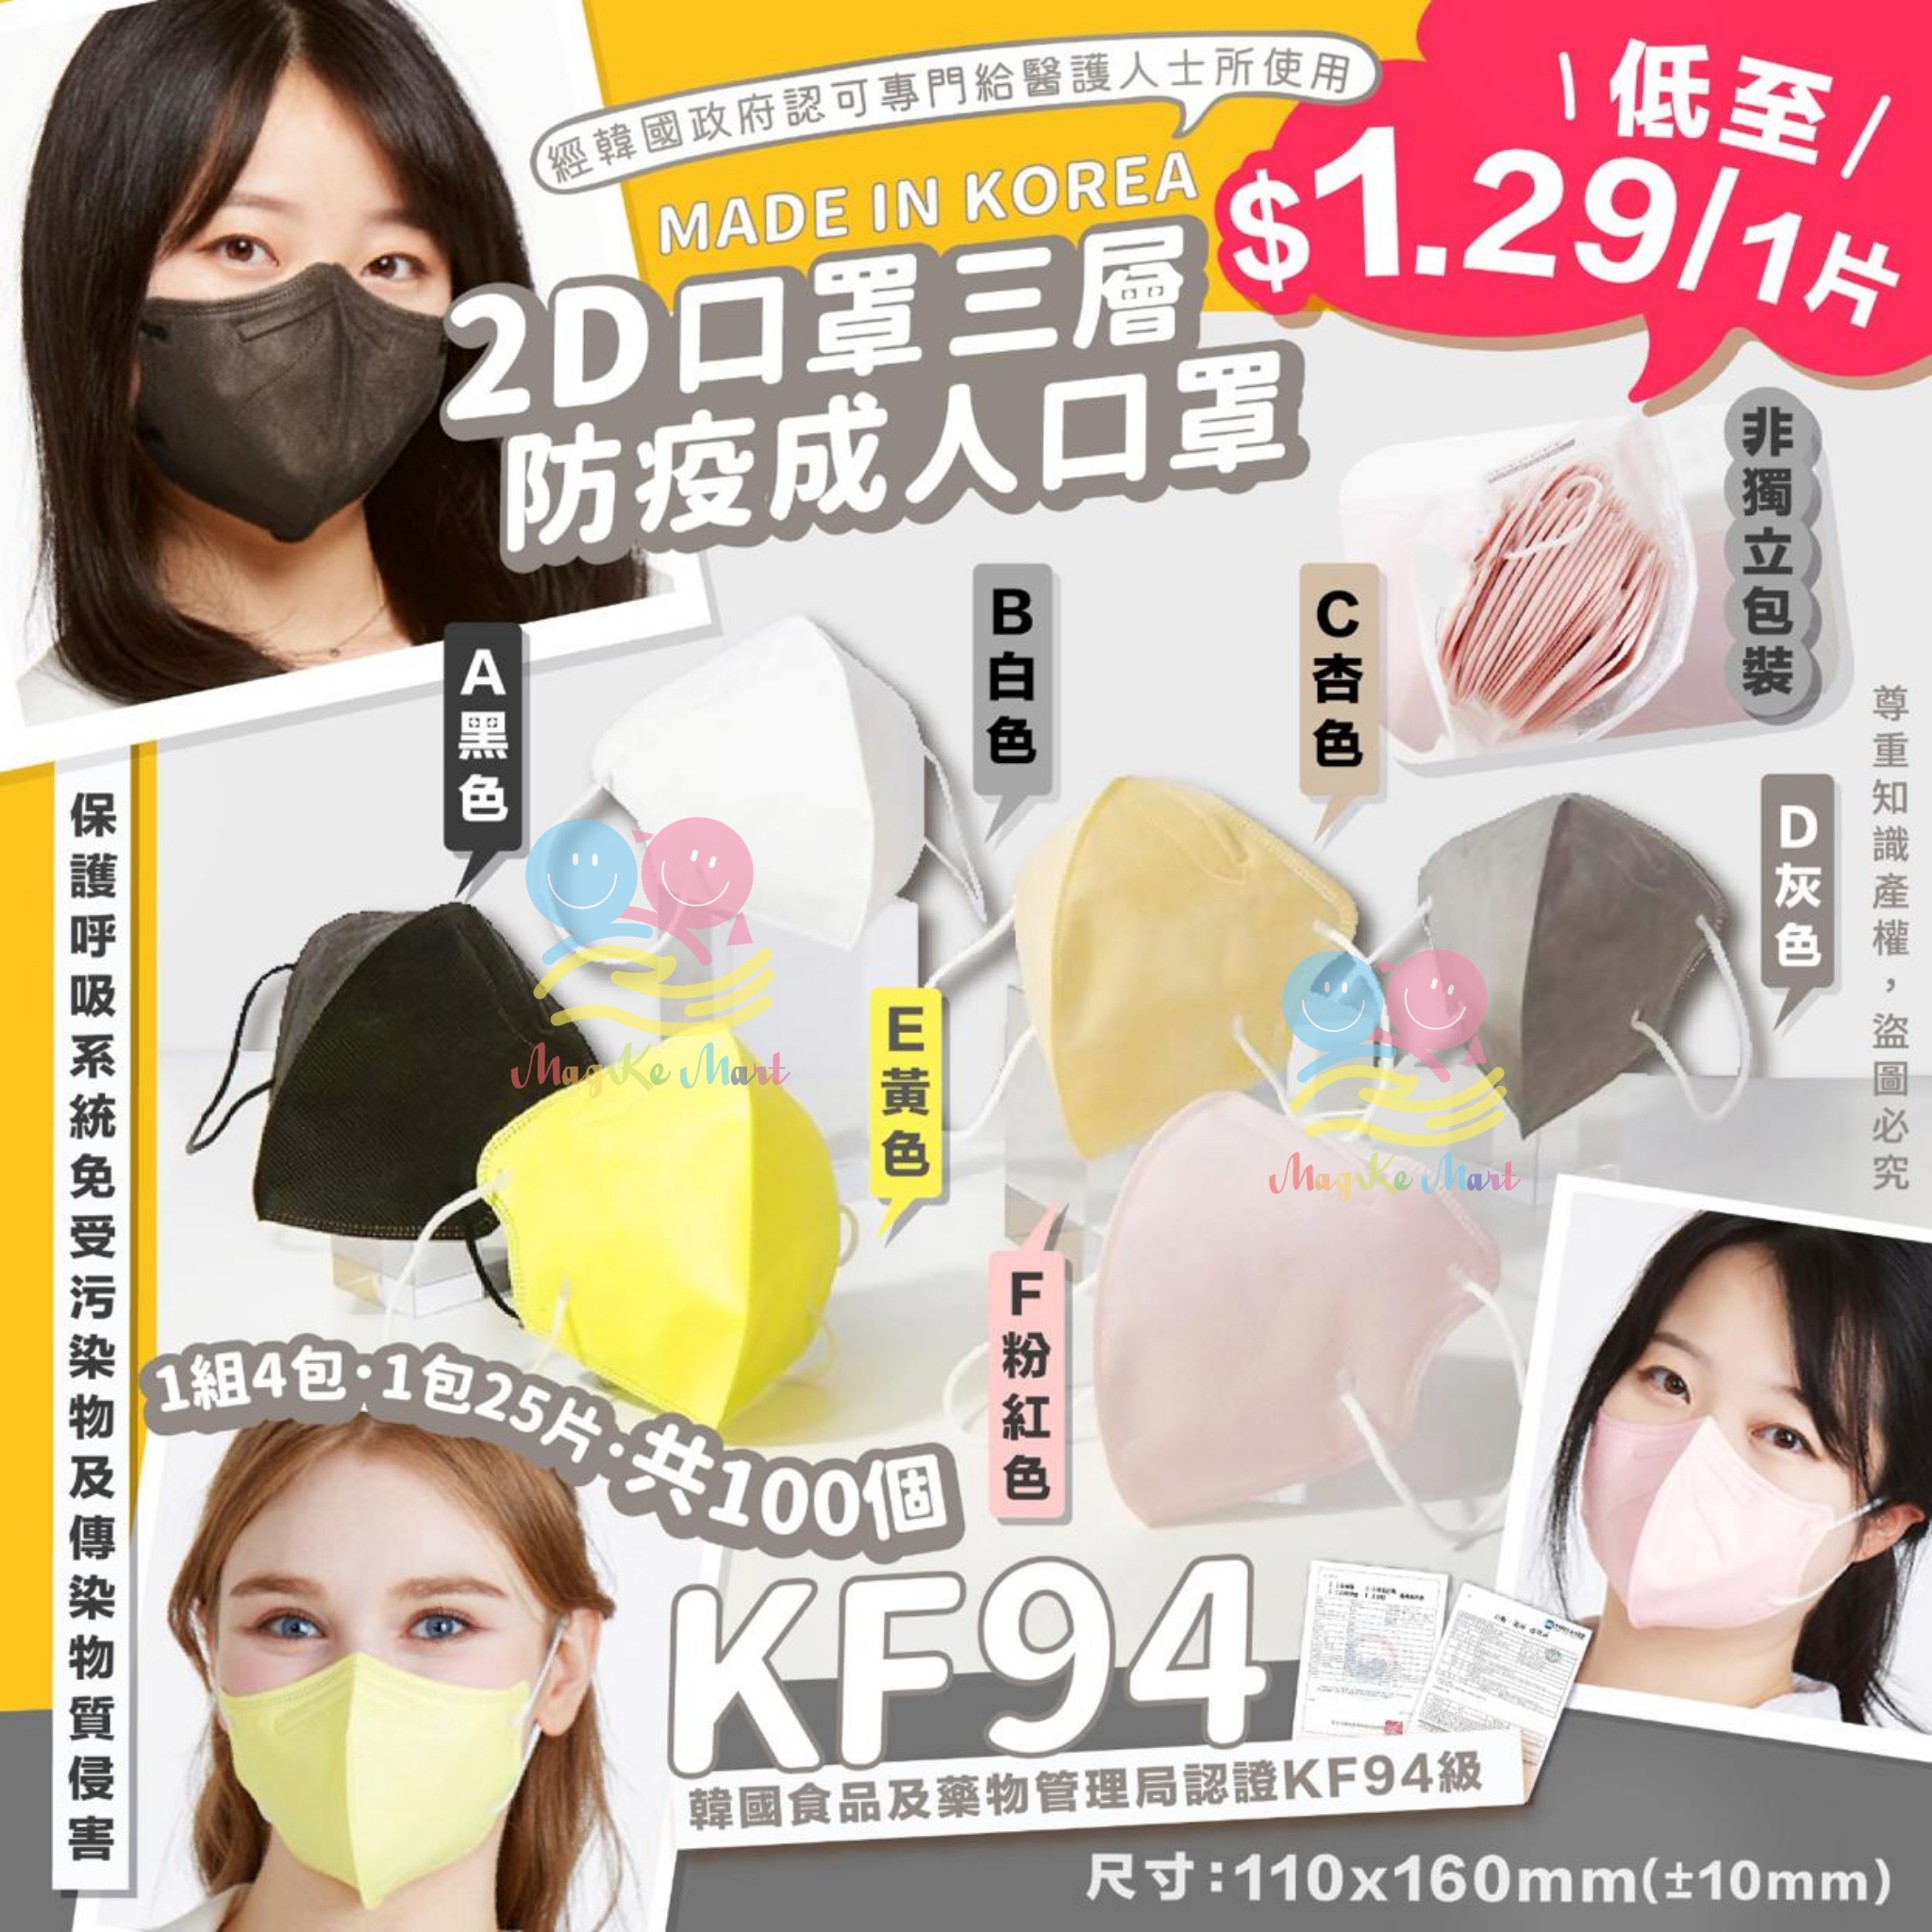 韓國2D三層KF94防疫成人口罩(1套4包共100個)(非獨立包裝)